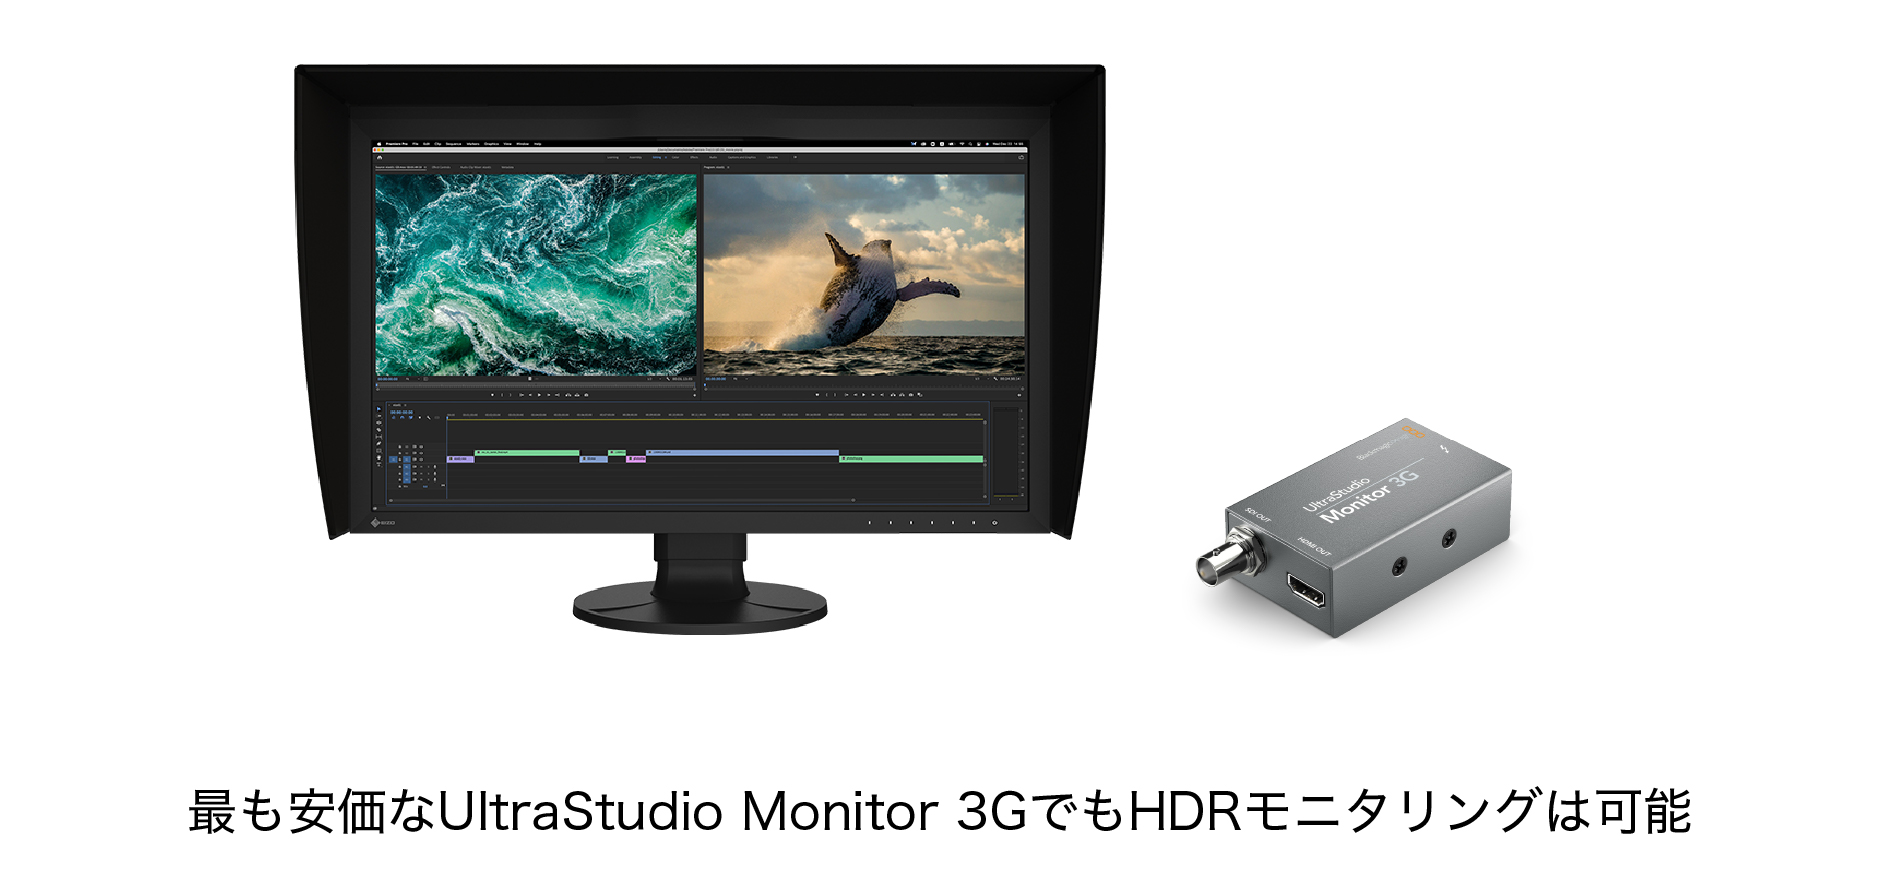 最も安価なUltraStudio Monitor 3GでもHDRモニタリングは可能